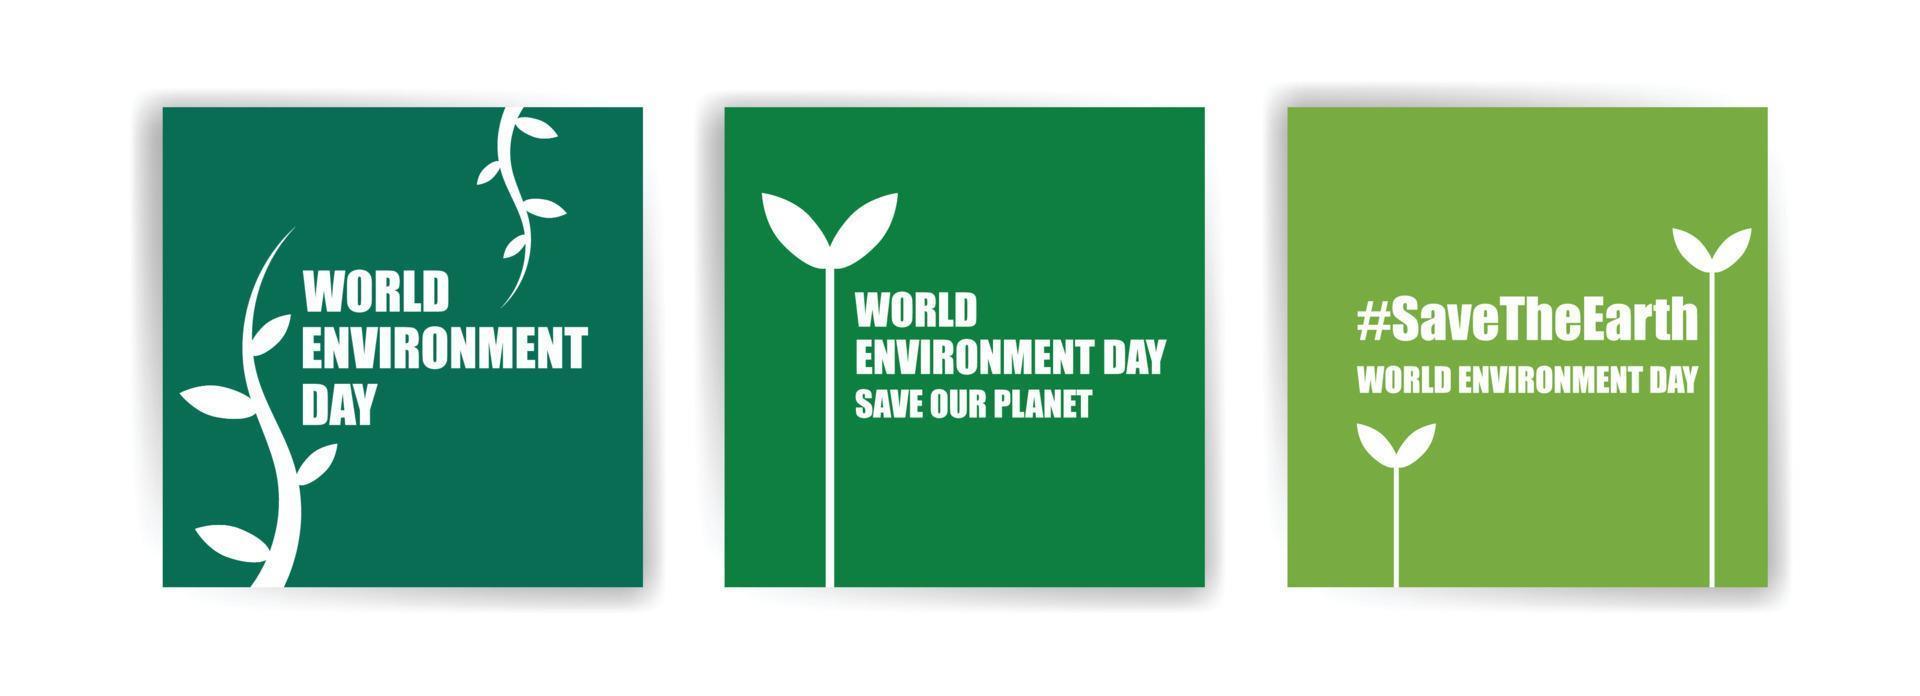 journée mondiale de l'environnement. éducation et campagnes sur l'importance de protéger la nature. publication sur les réseaux sociaux pour la journée mondiale de l'environnement. vecteur